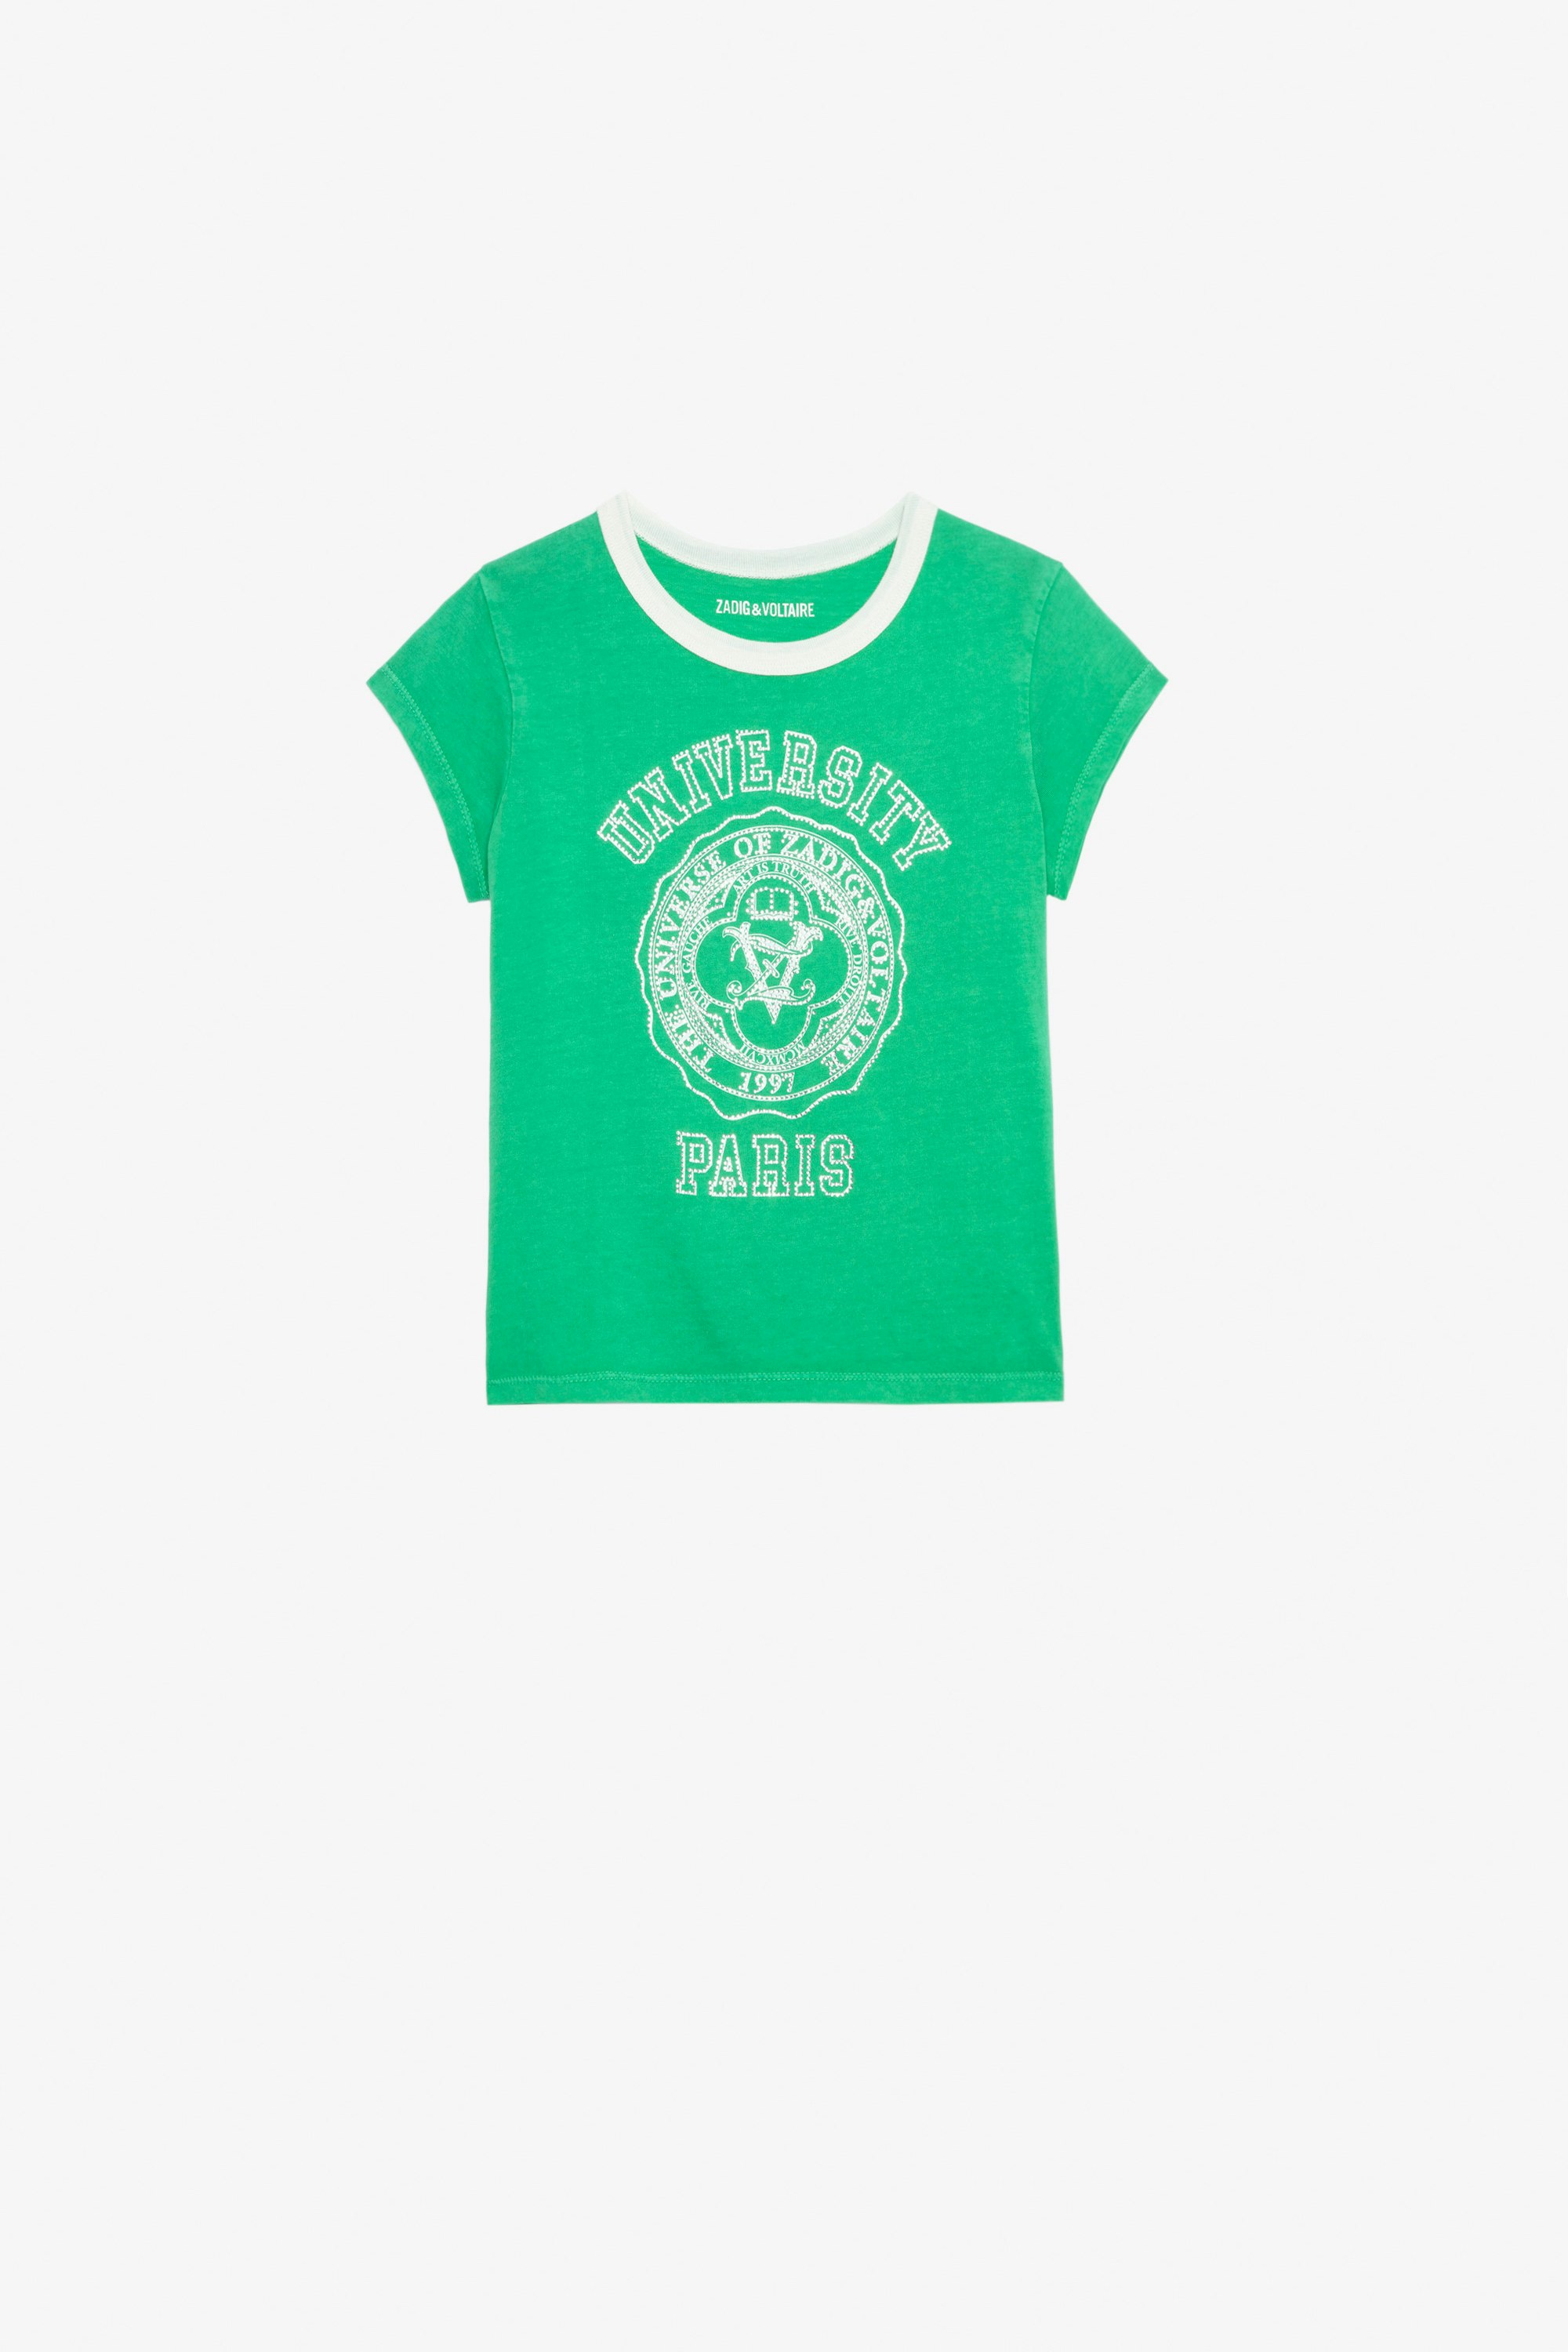 Niels Girls’ T-Shirt - Girls’ green short-sleeved cotton jersey T-shirt with diamanté and université motif.